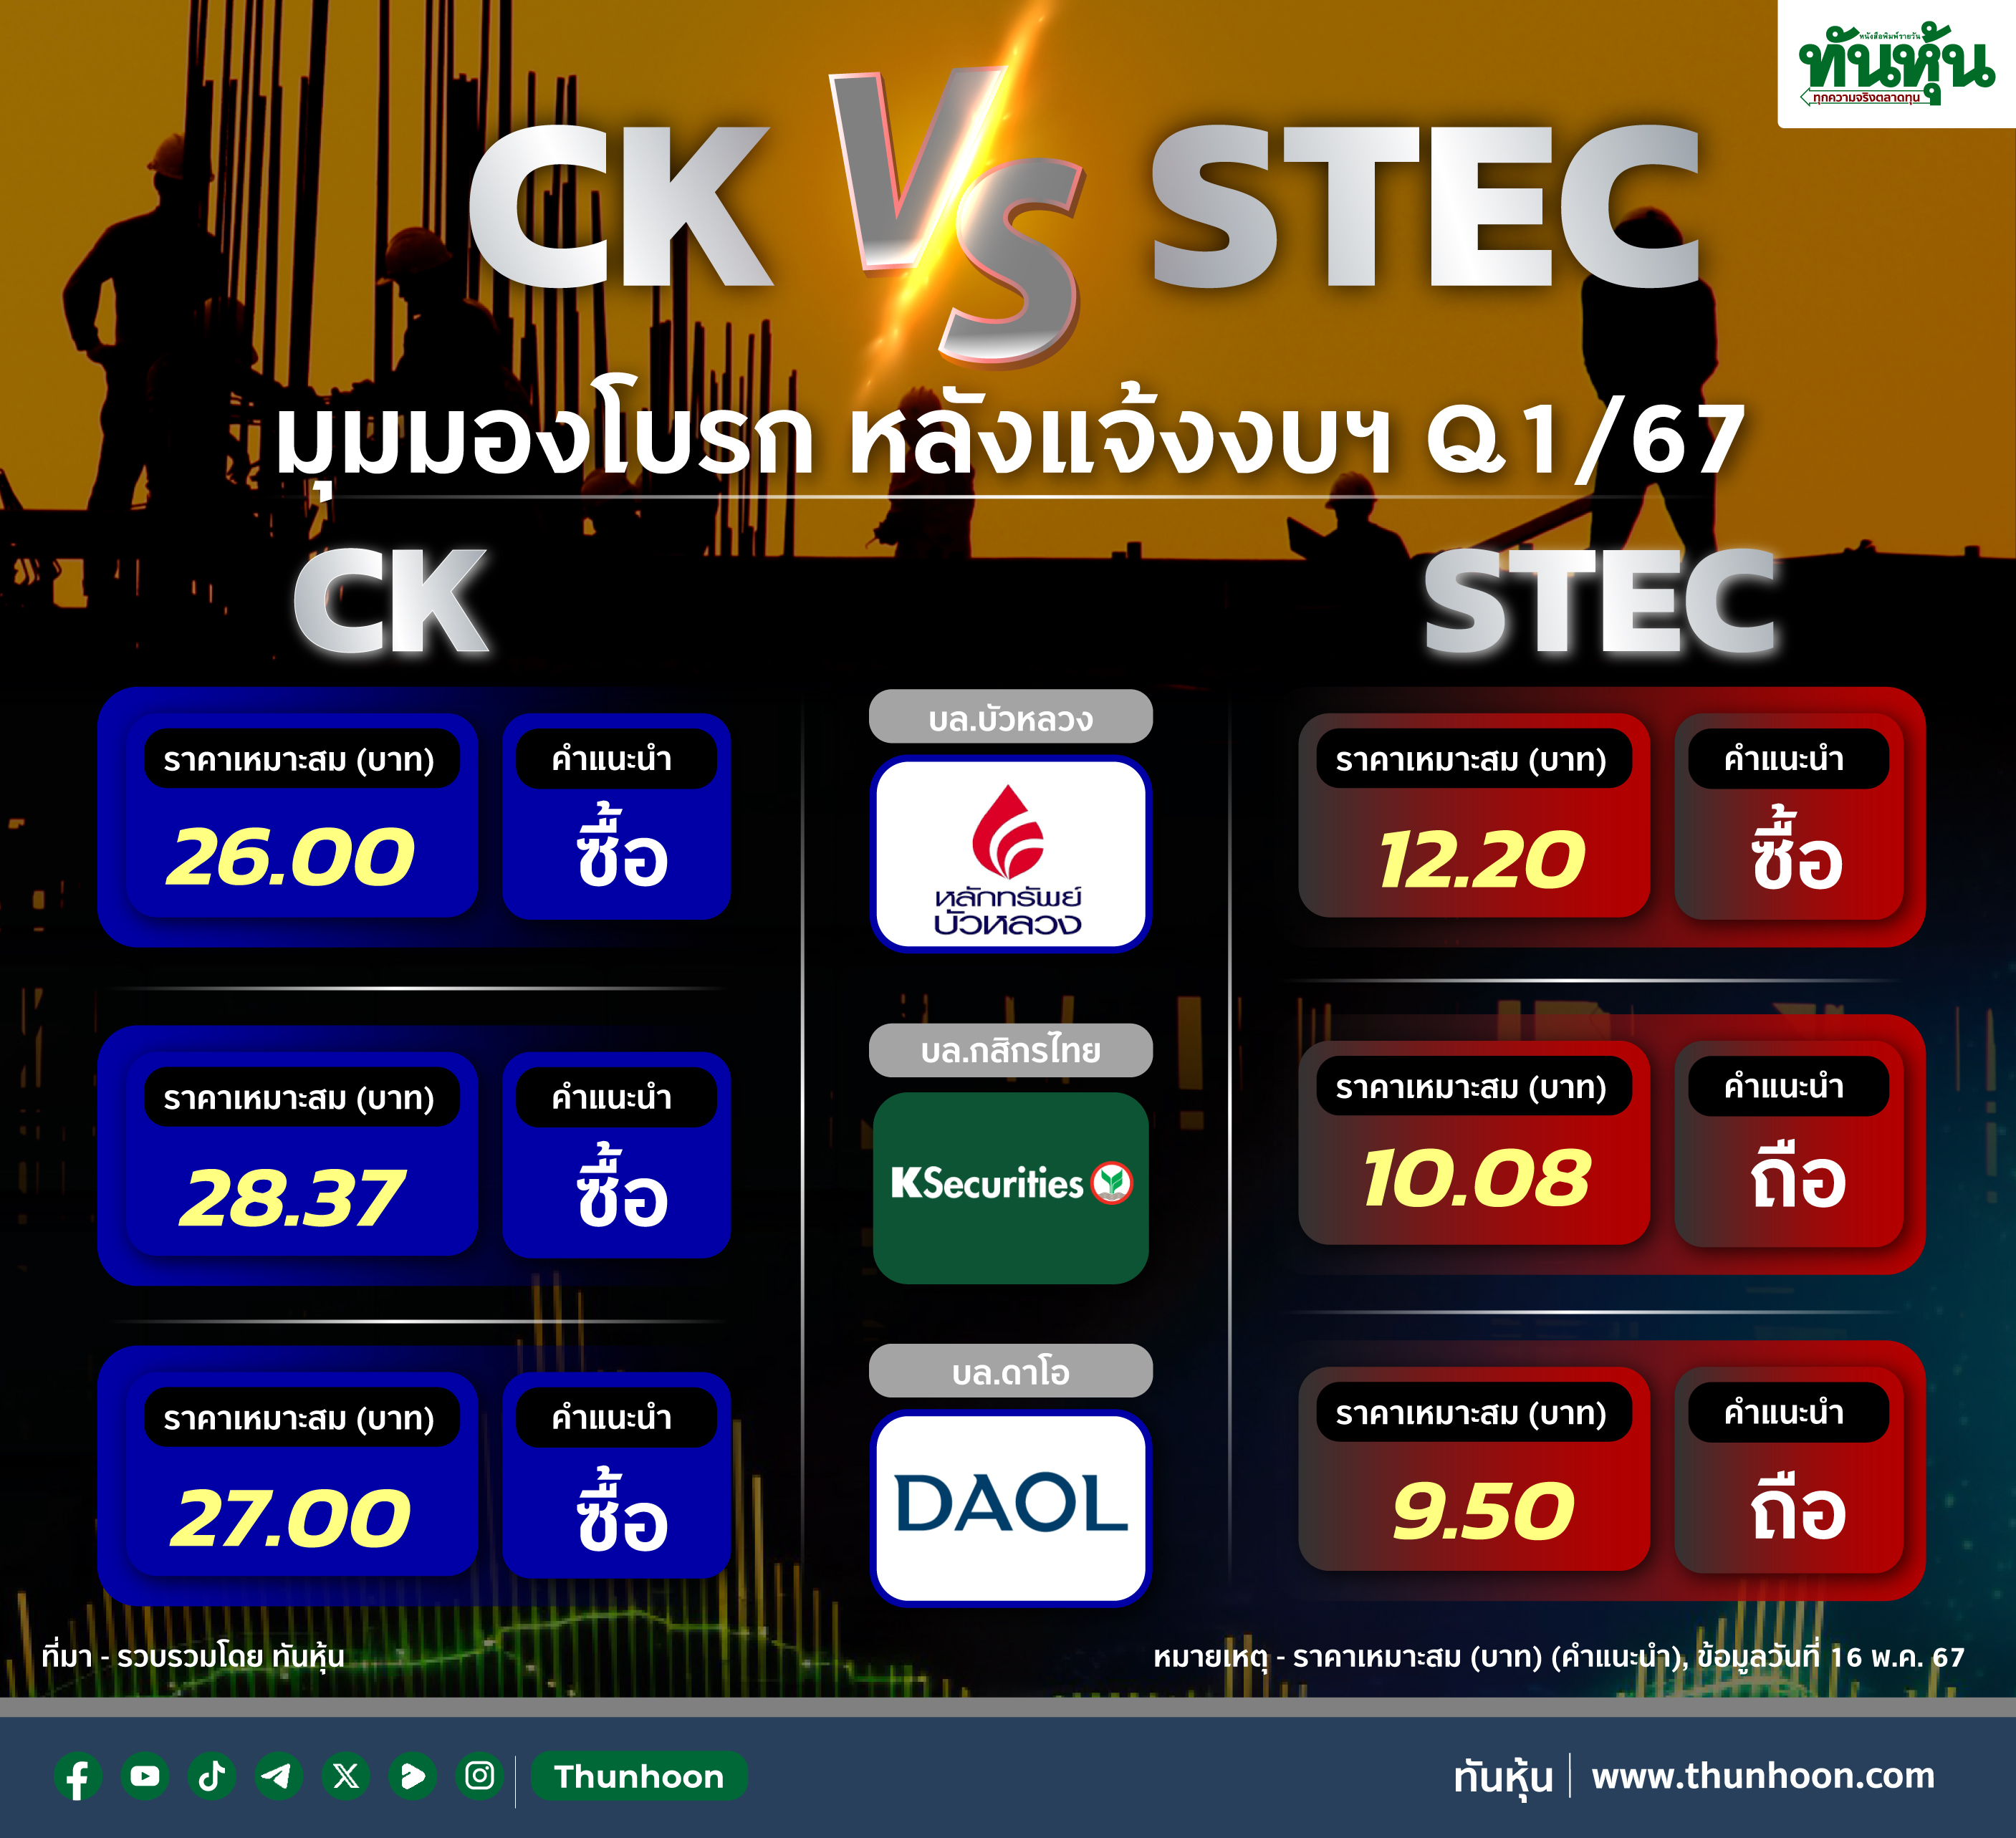 CK-STEC มุมมองโบรก หลังแจ้งงบฯ Q1/67